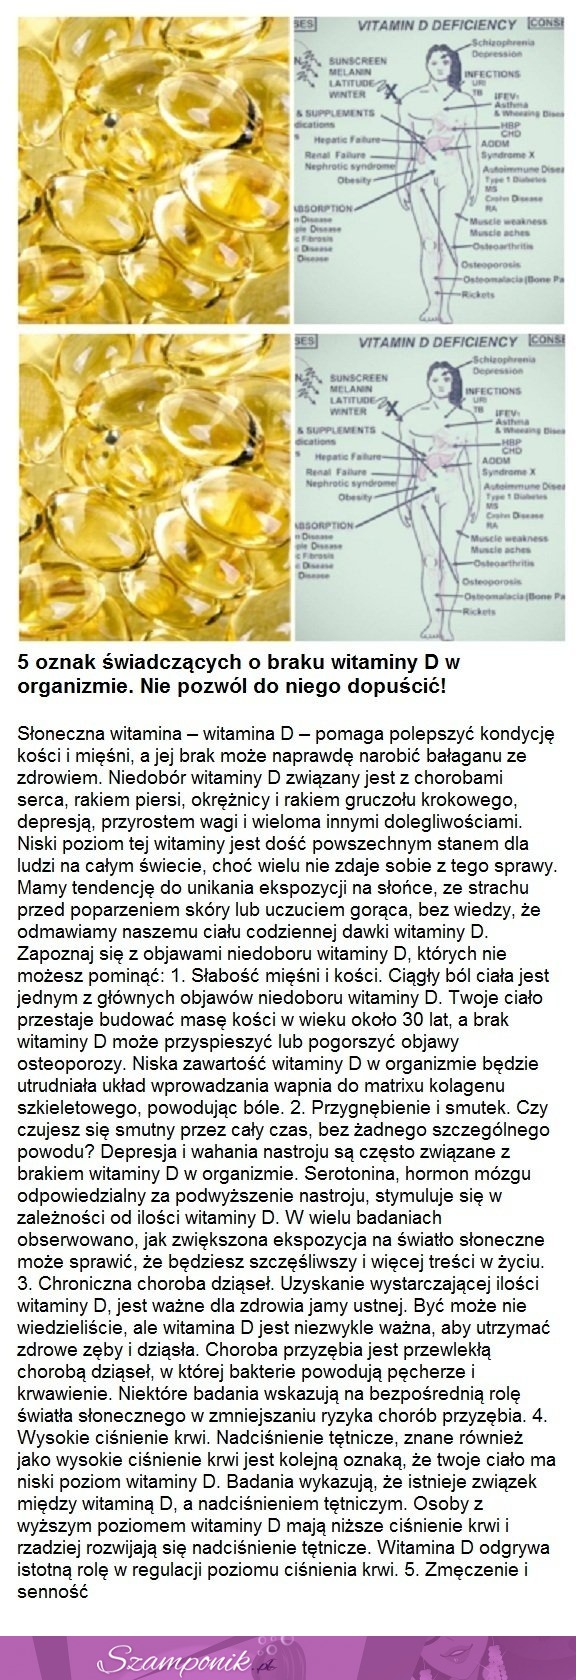 5 oznak świadczących o braku witaminy D w organizmie. Nie pozwól do tego dopuścić!